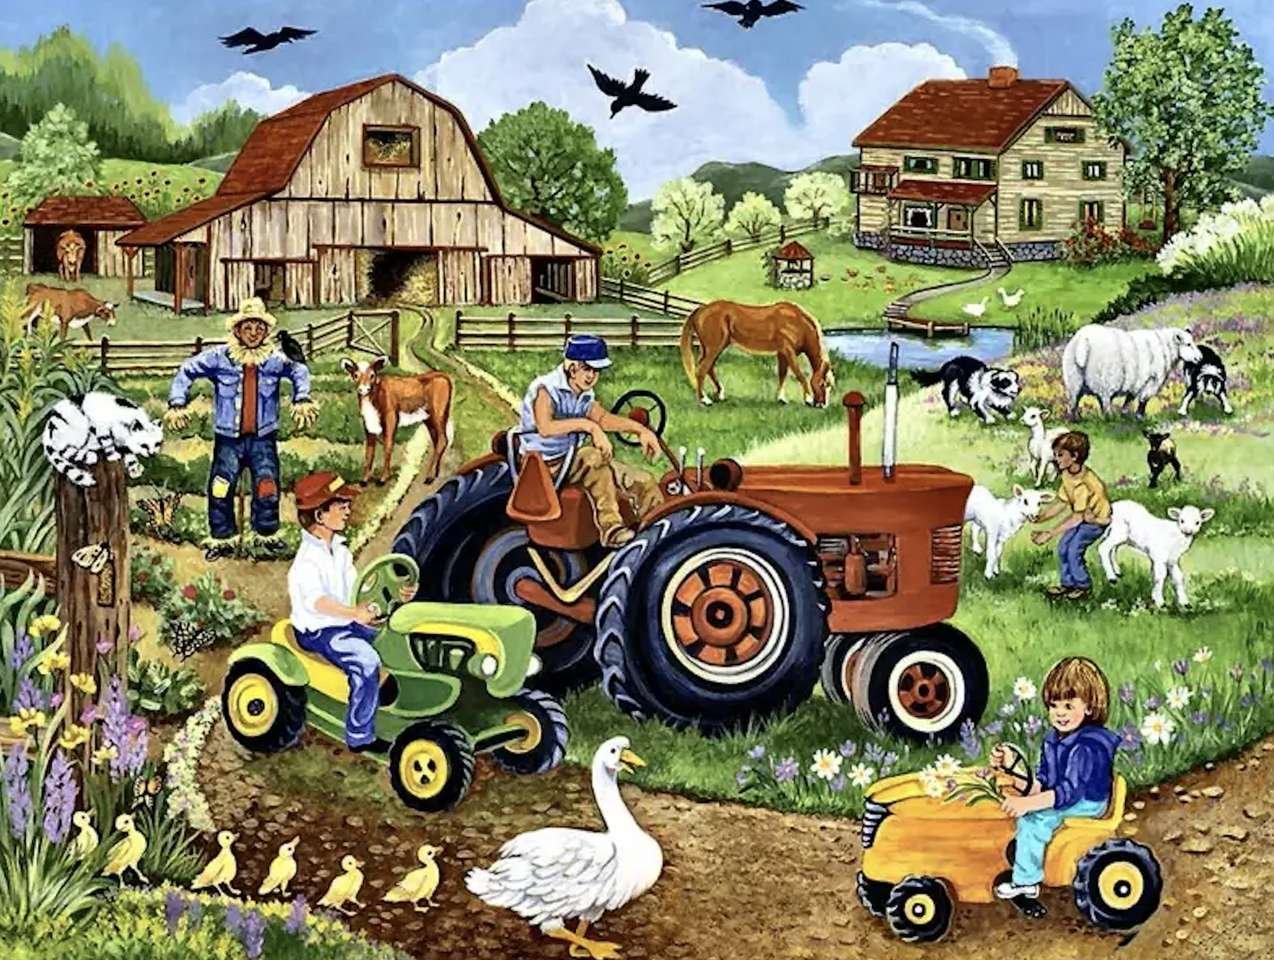 He lives on the farm. Сюжетная картина на ферме. Ферма с трактором и животными. На ферме. Тракторы. Ферма для детей.